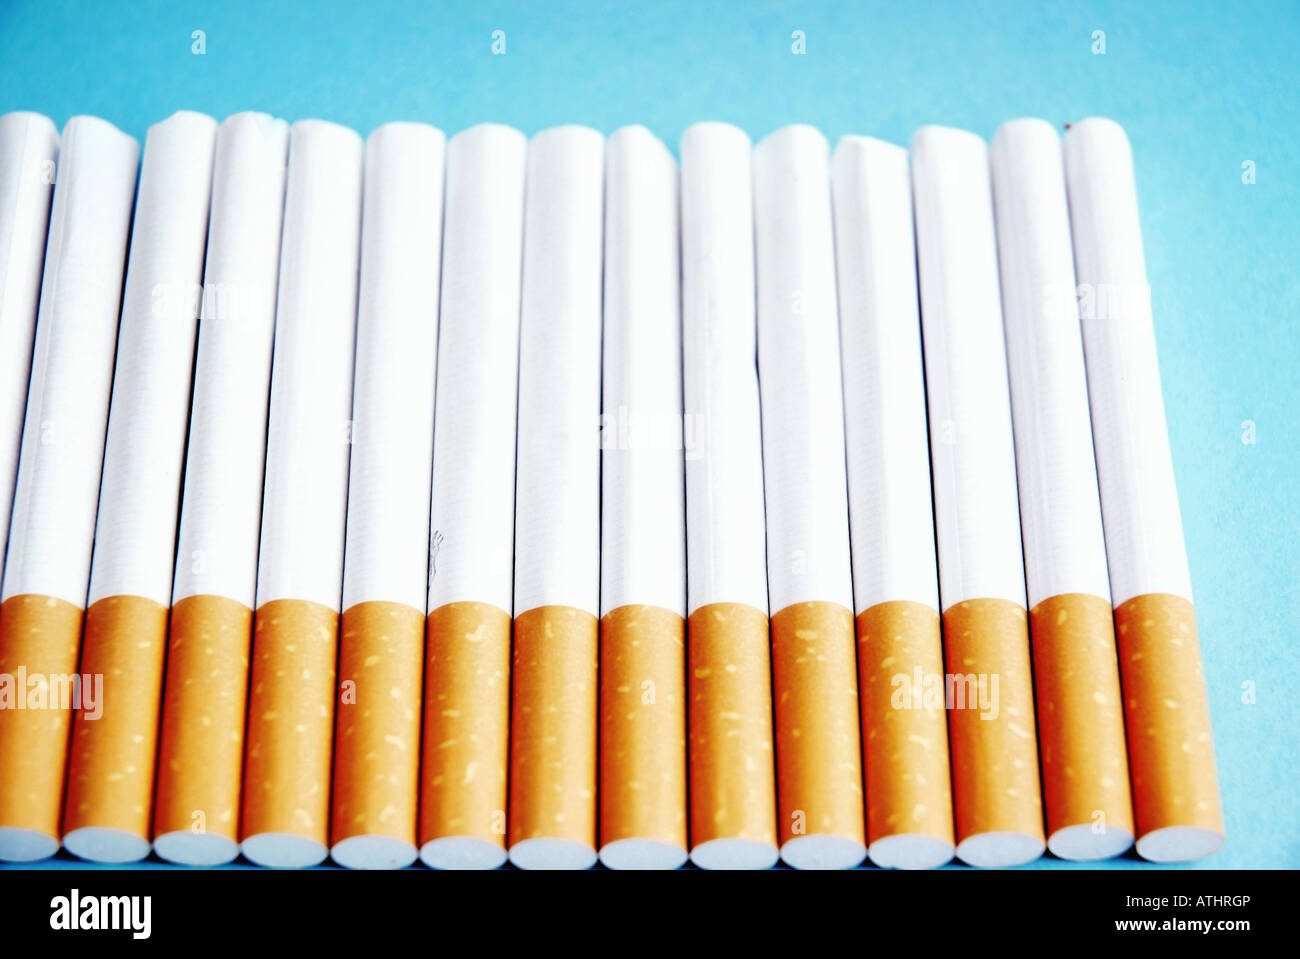 Una linea con le sigarette Eine linea Zigaretten aus Foto Stock